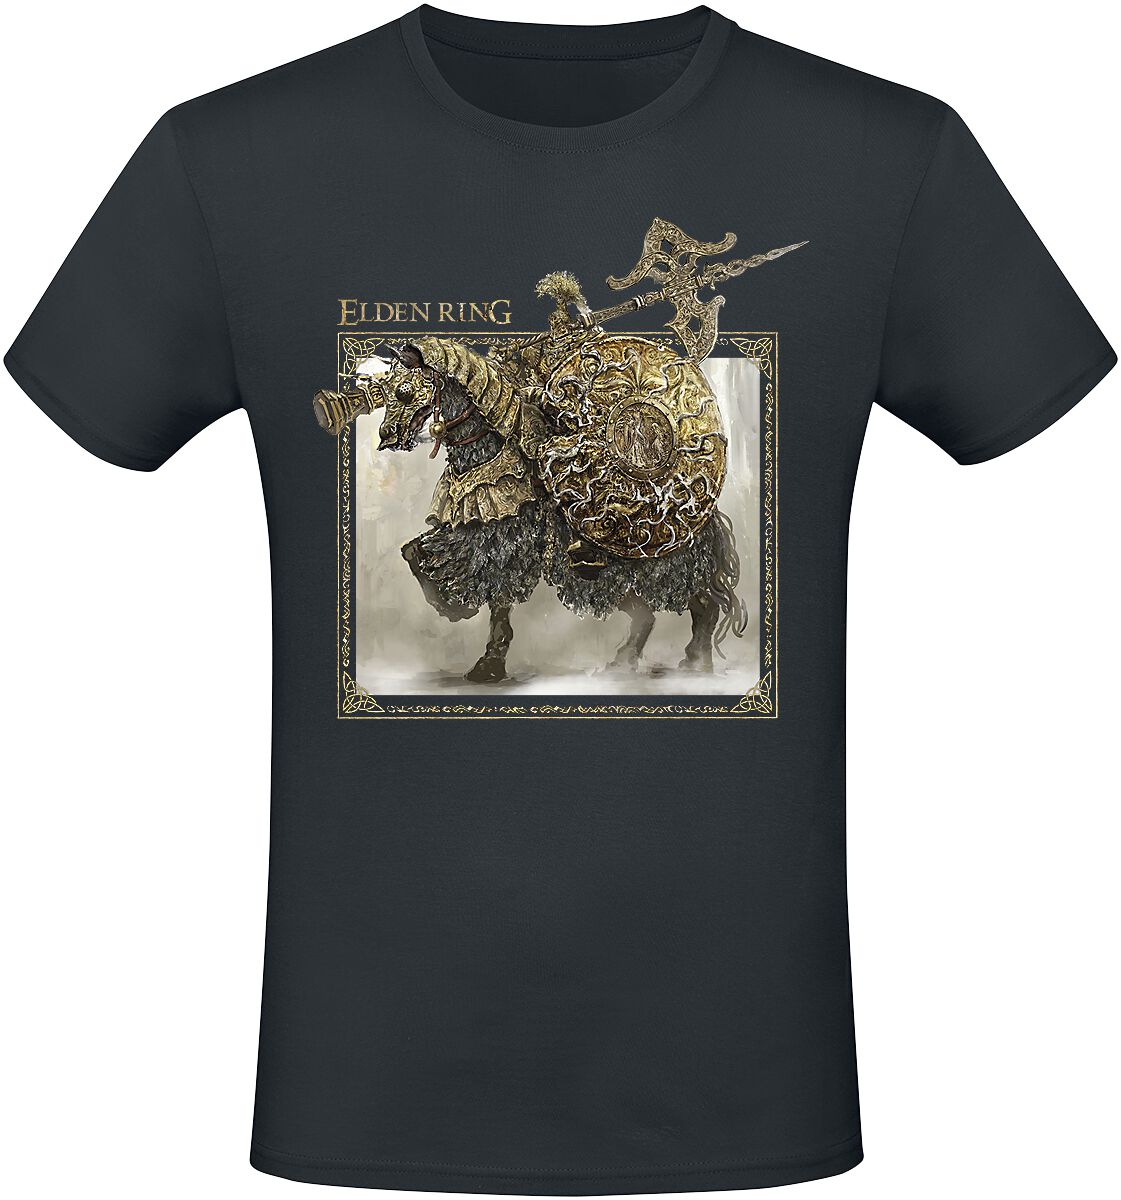 Elden Ring - Gaming T-Shirt - Tree Sentinel - S bis XXL - für Männer - Größe XXL - schwarz  - EMP exklusives Merchandise!